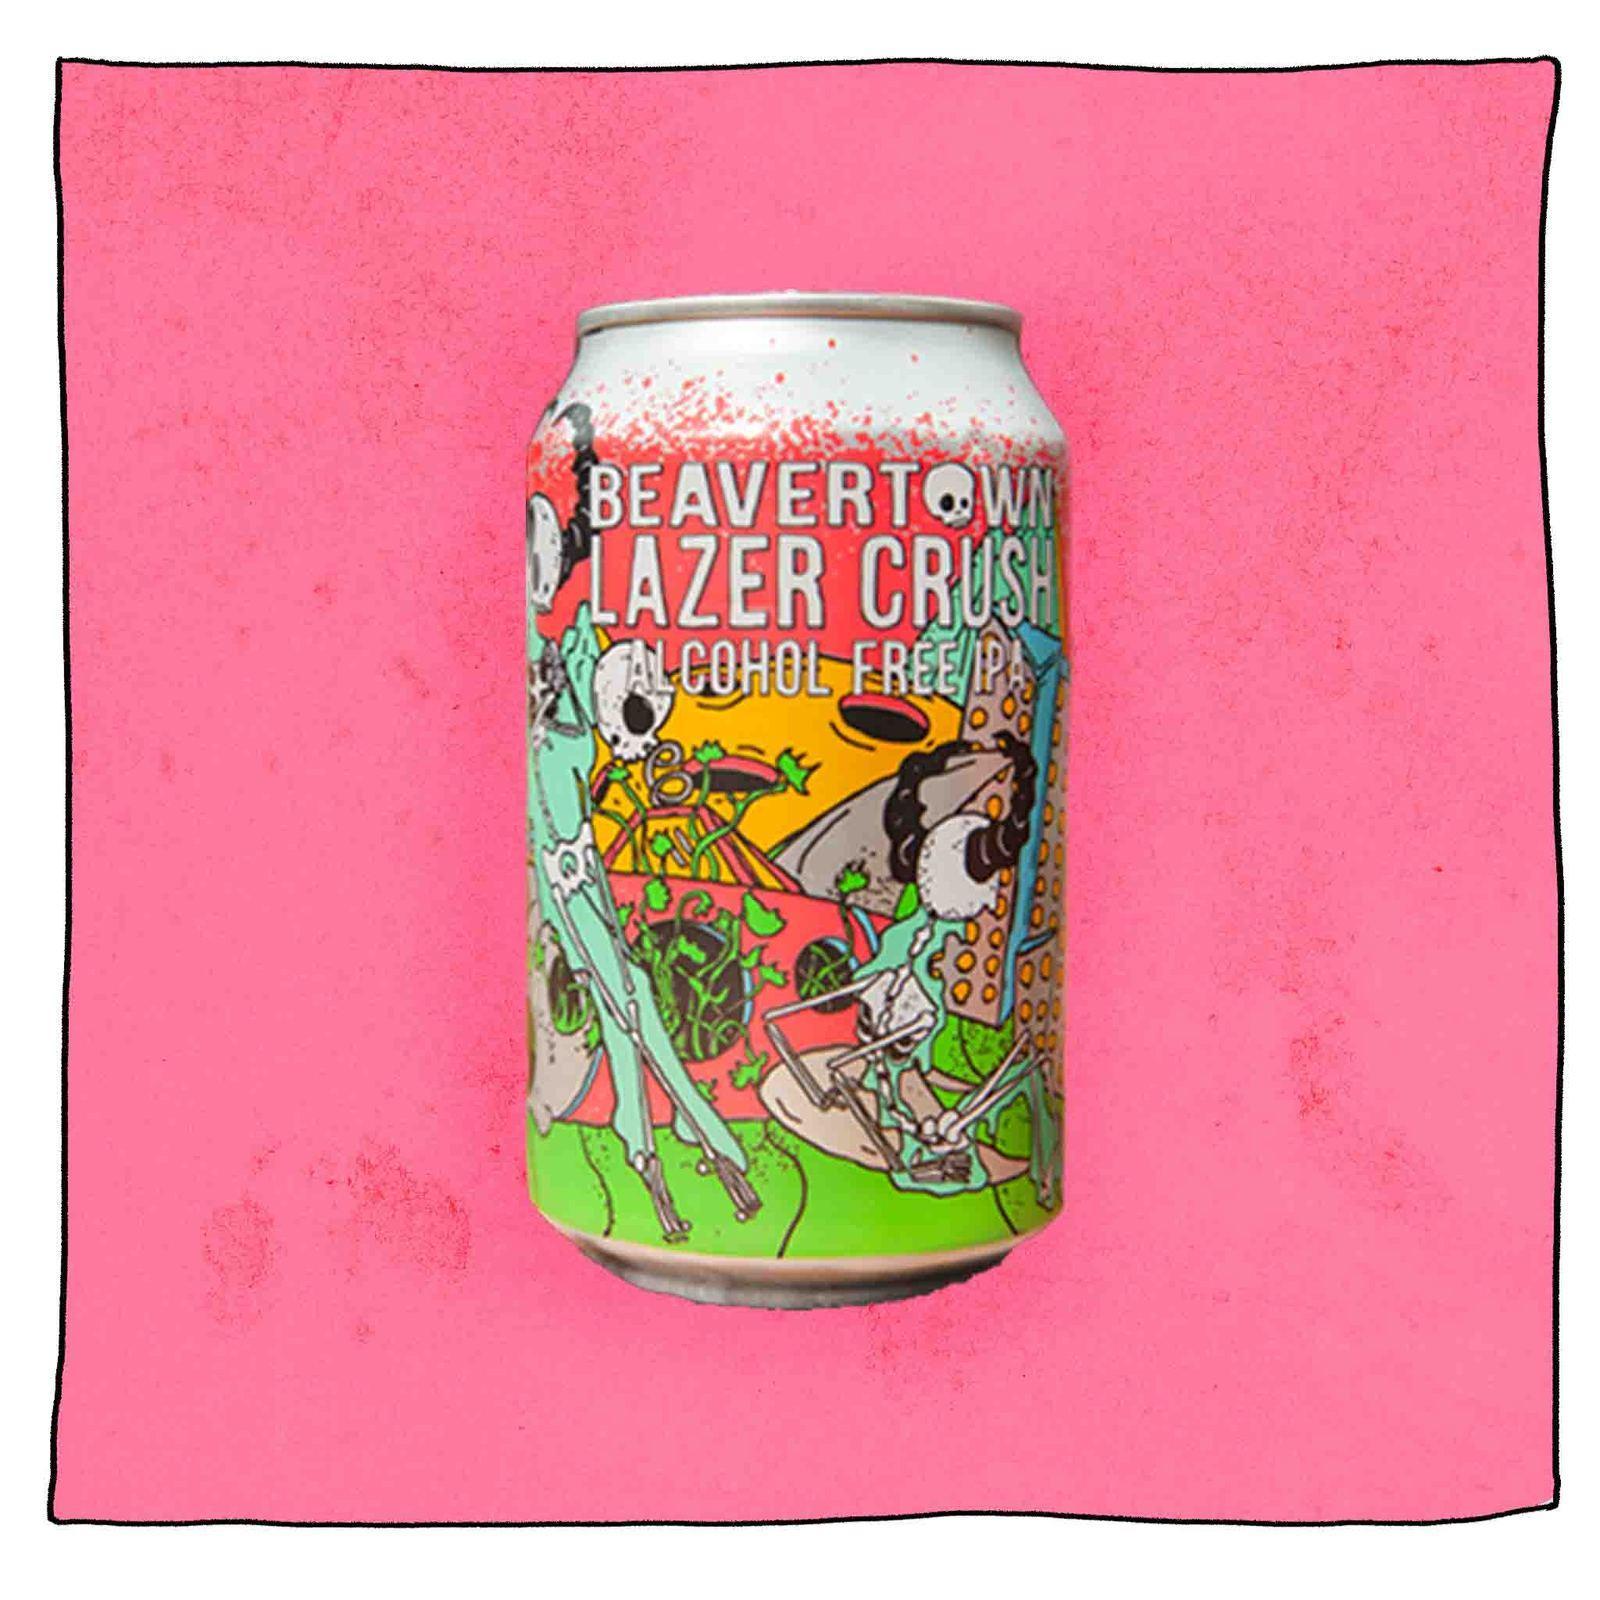 Alcohol free Beavertown Lazer Crush beer